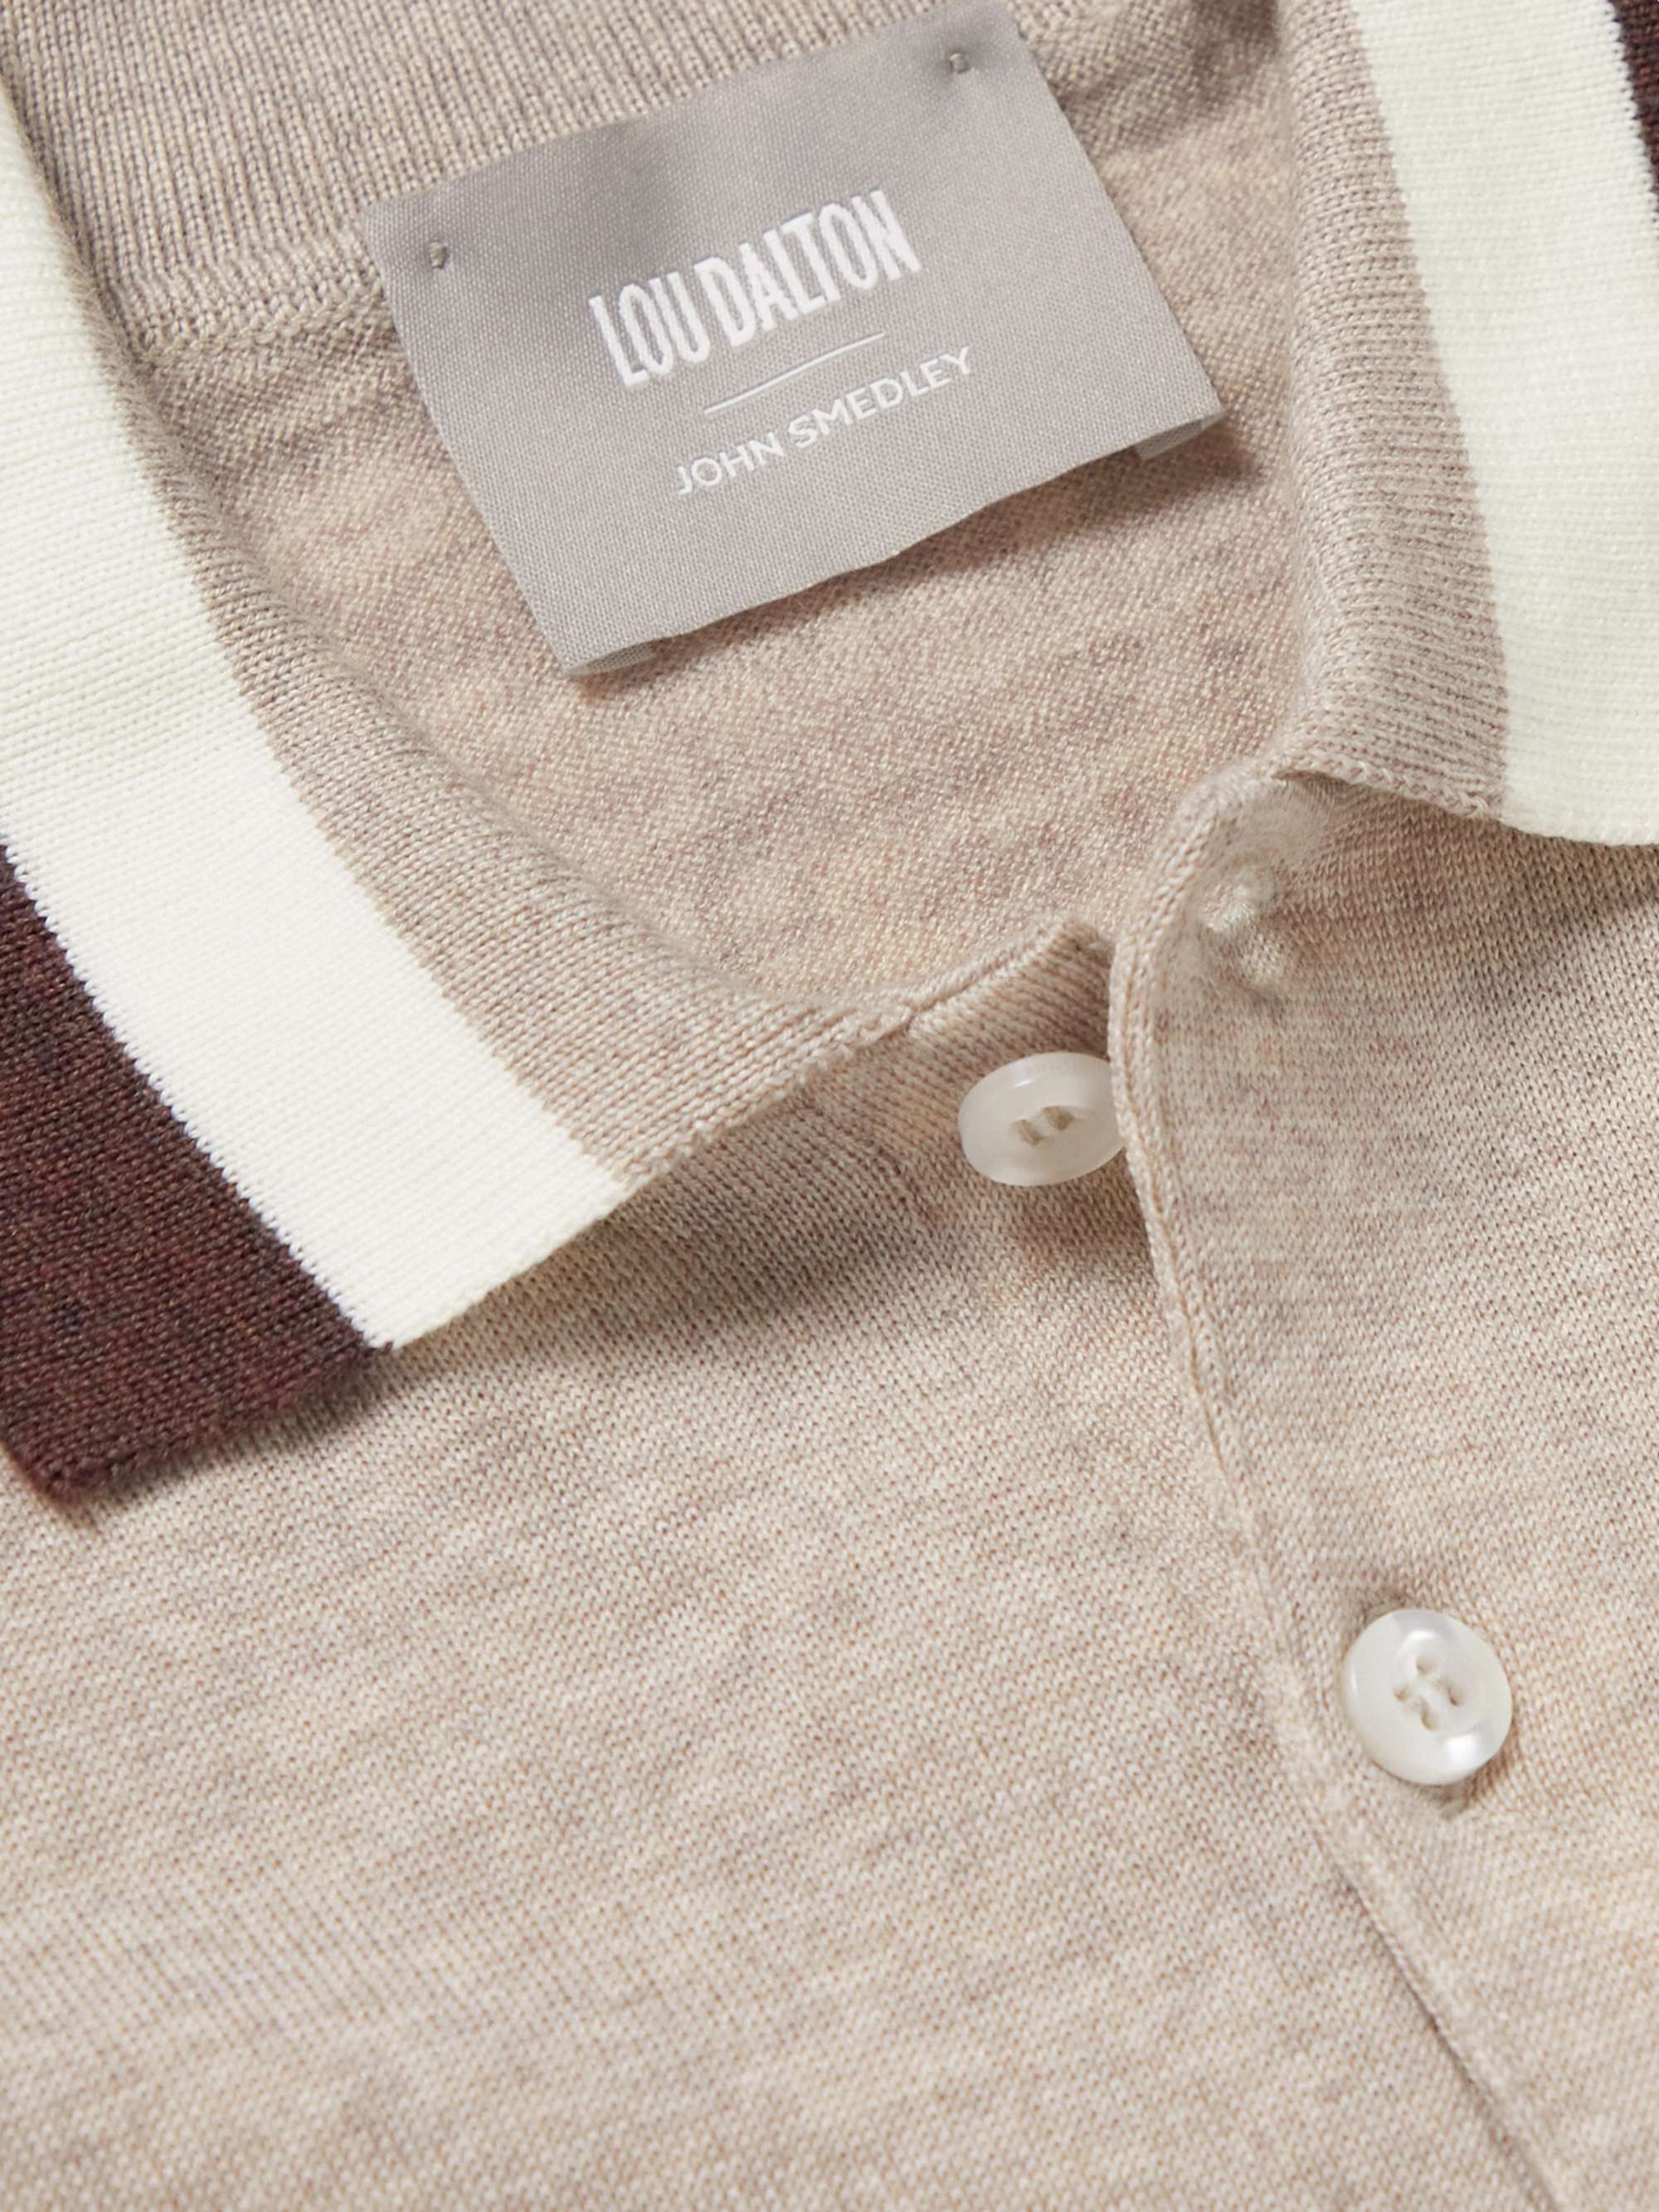 JOHN SMEDLEY + Lou Dalton Striped Merino Wool Polo Shirt